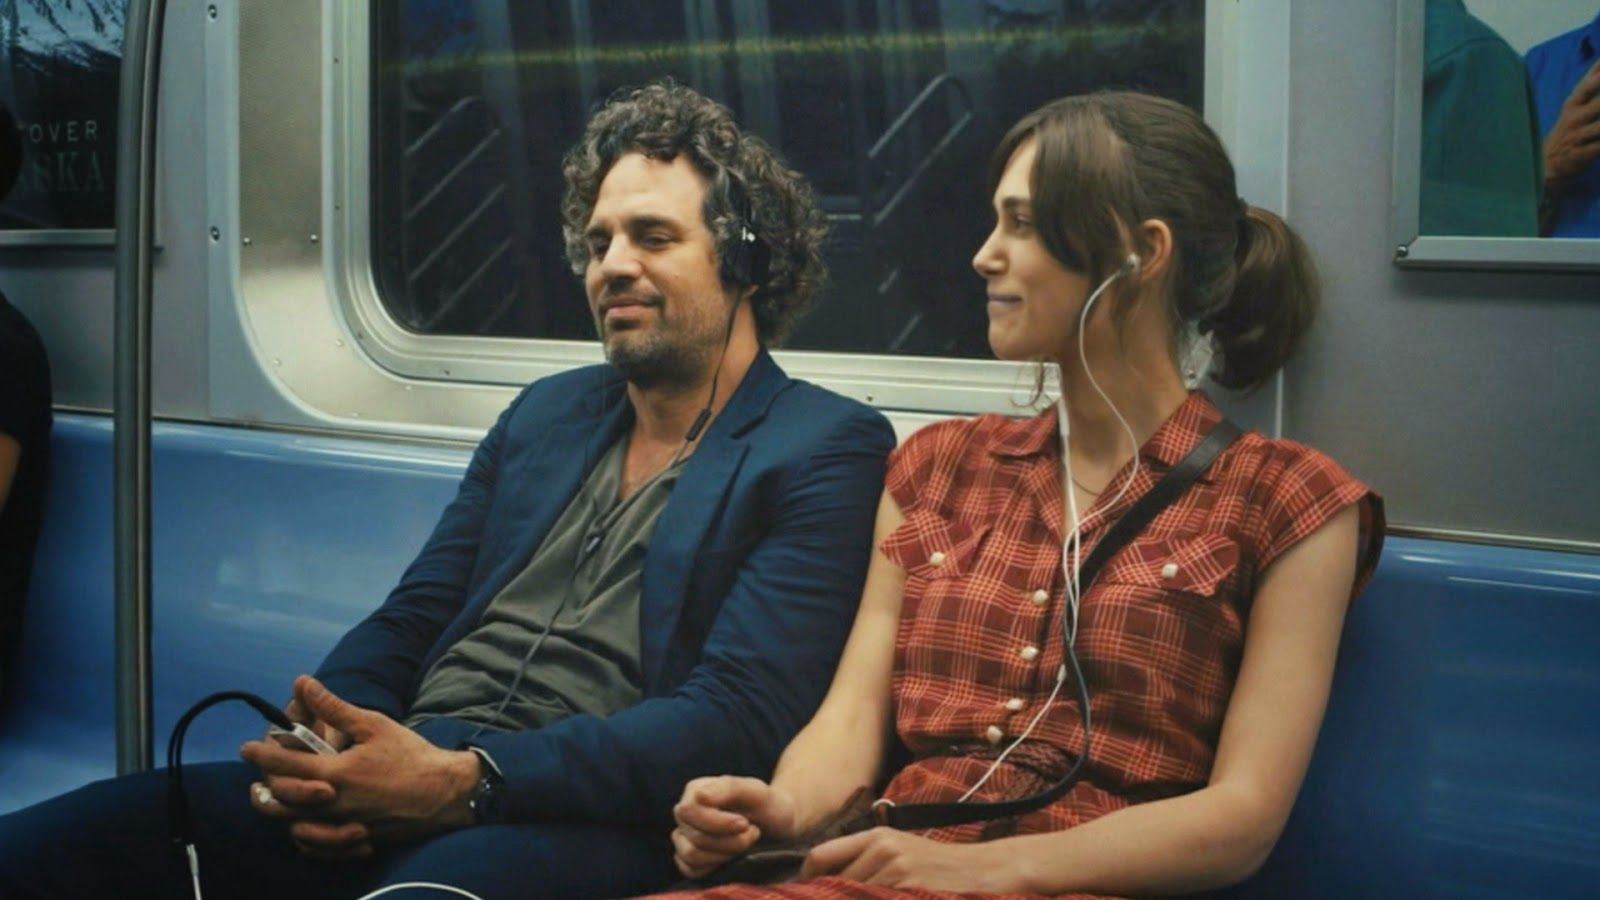 Cena do filme em que os personagens estão sentado nos metrô compartilhando os fones de ouvido.